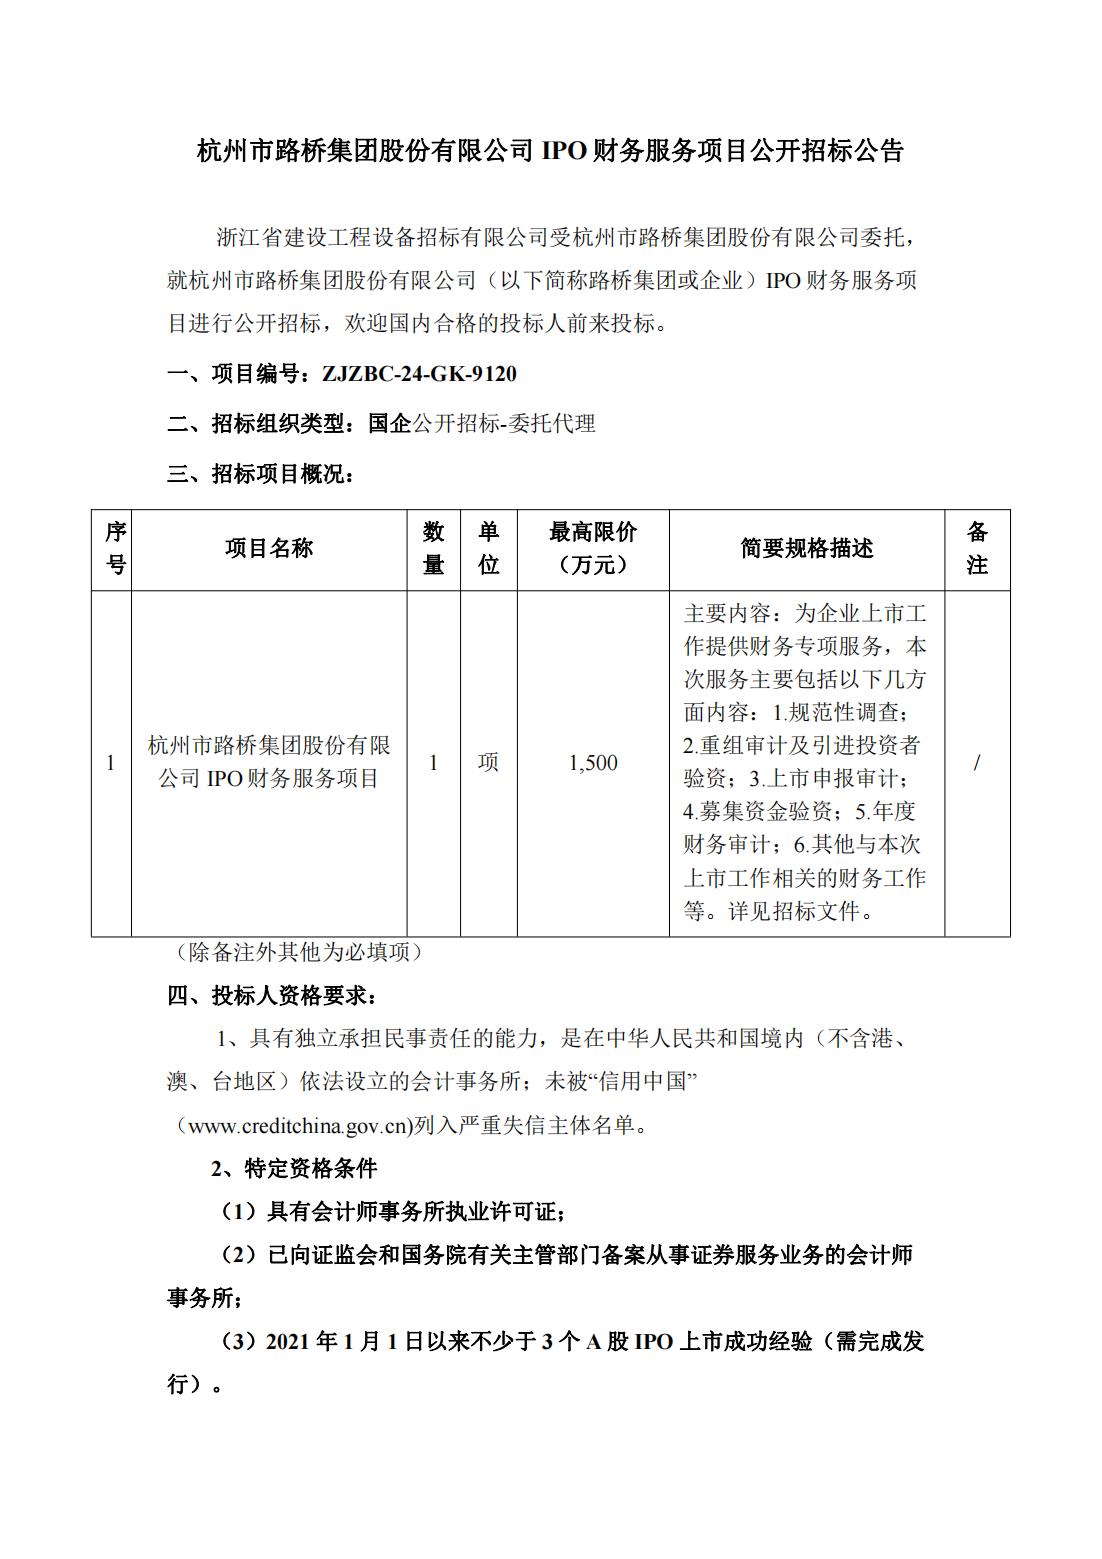 杭州市尊龙凯时-人生就是博集团股份有限公司IPO财务服务项目公开招标公告_00(1).jpg